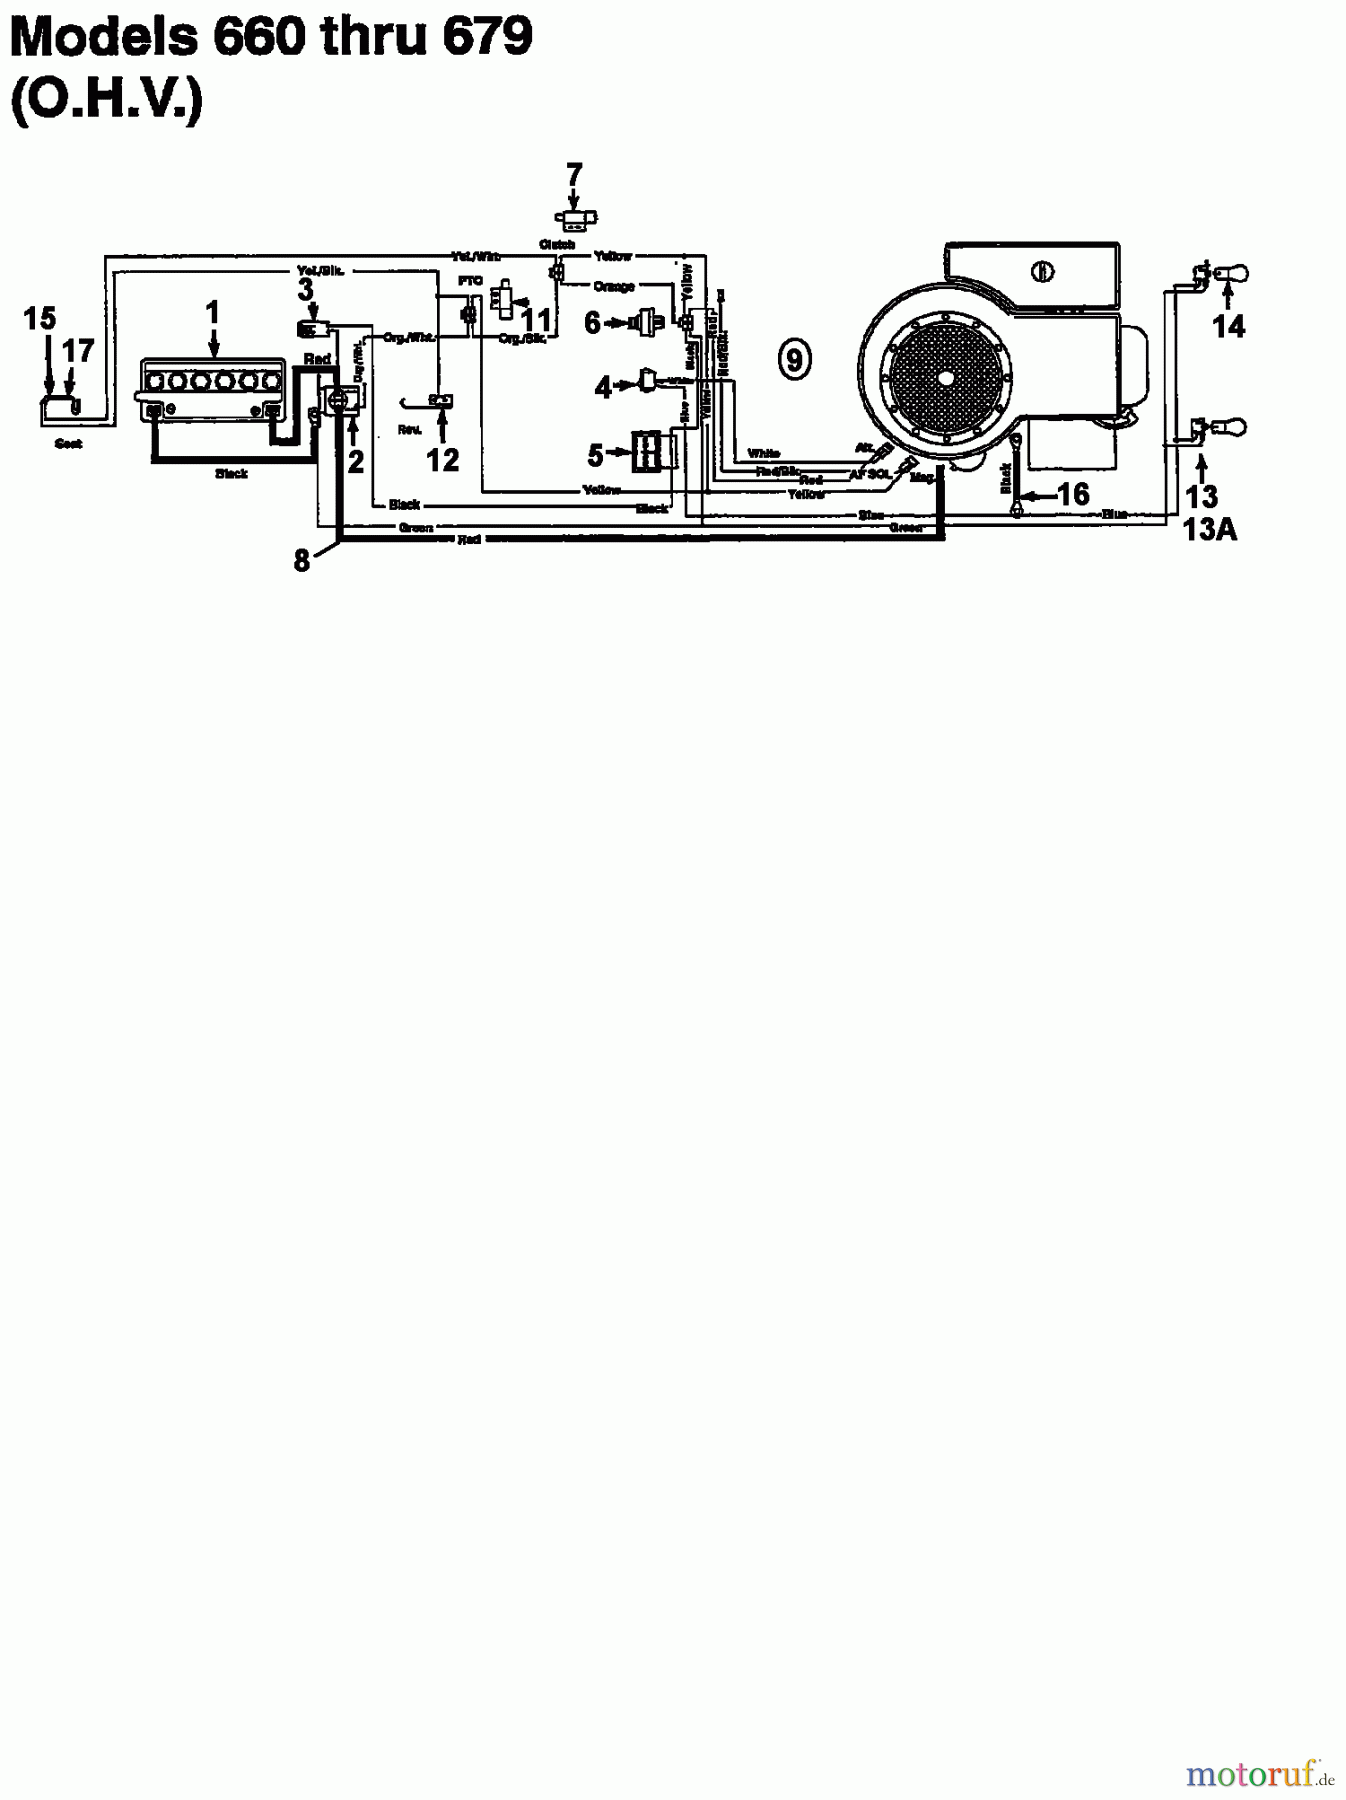  Raiffeisen Lawn tractors 112 ESL 133I670F628  (1993) Wiring diagram for O.H.V.